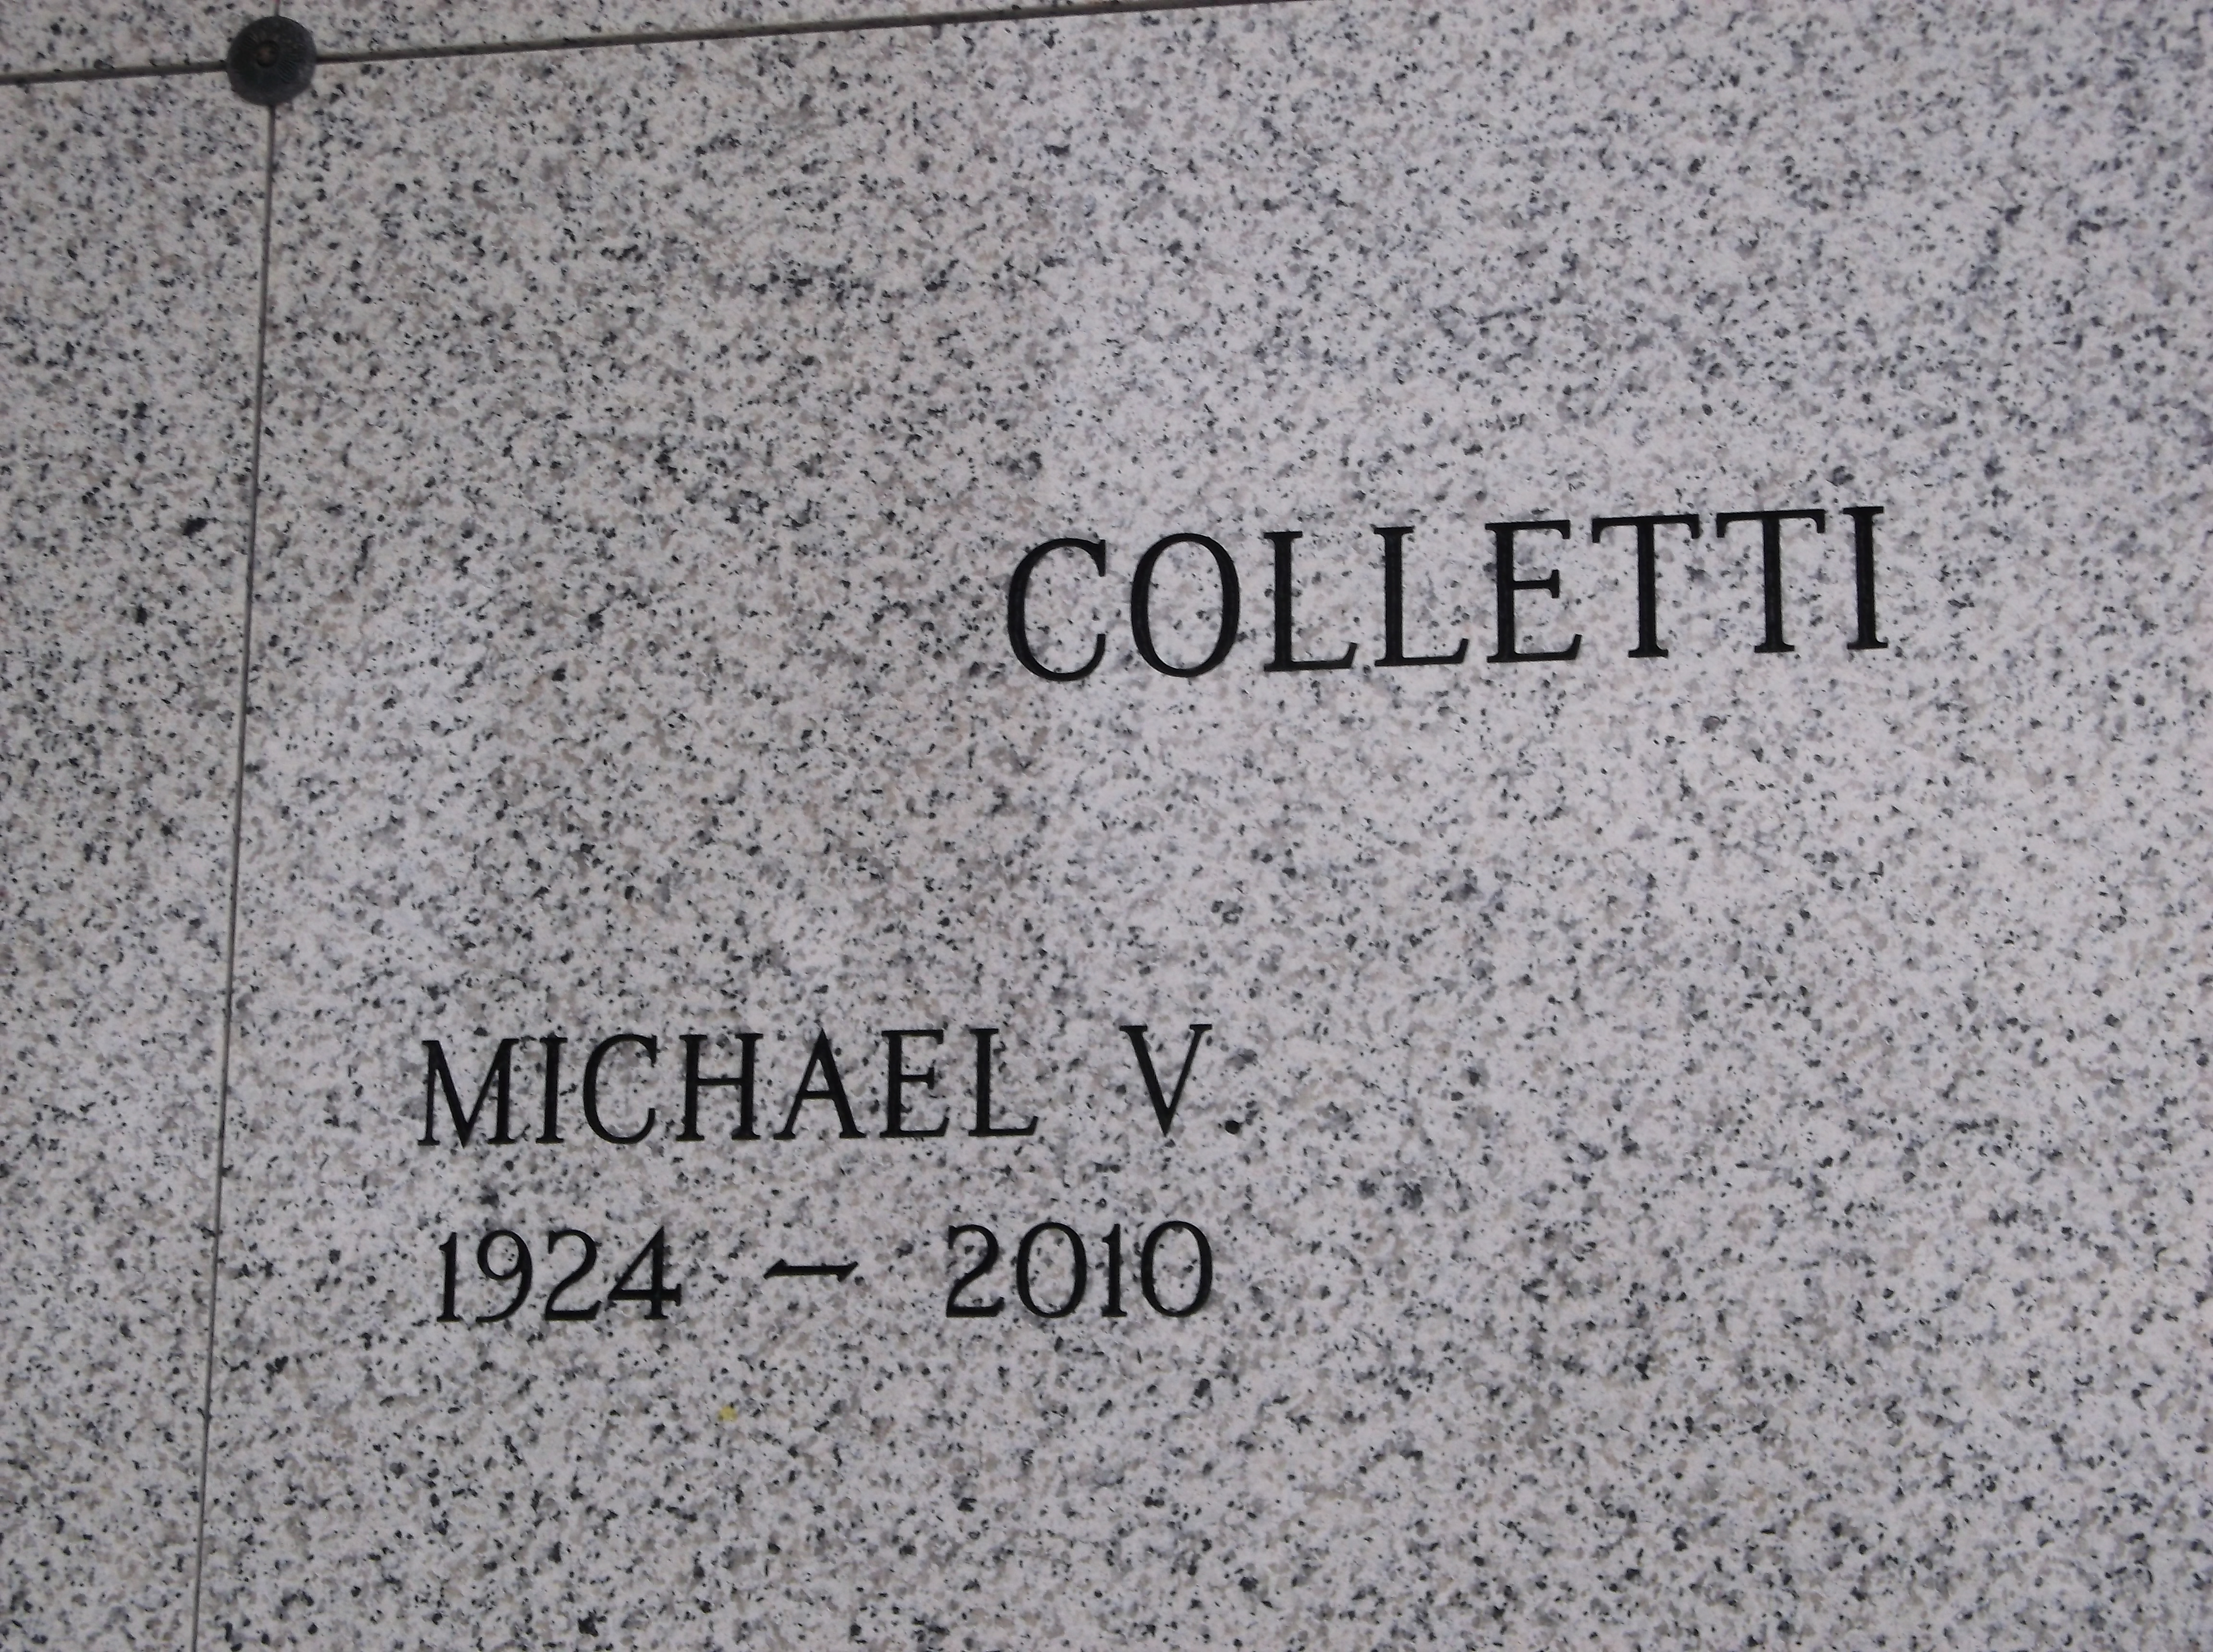 Michael V Colletti